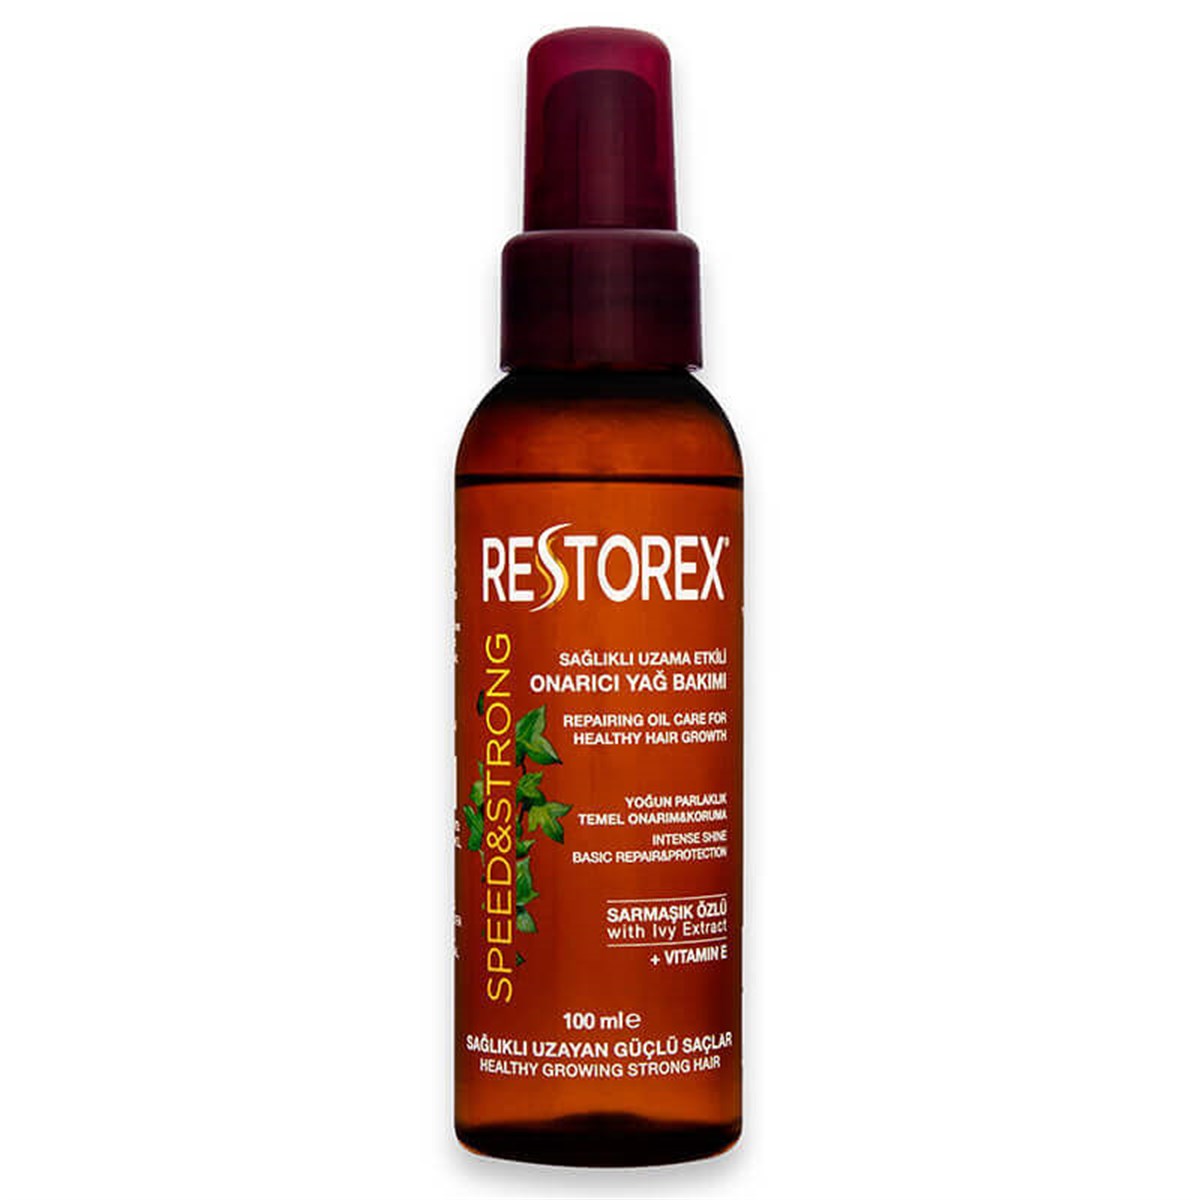 Restorex Yoğun Saç Bakım Yağı 100 ml Fiyatları | Dermosiparis.com